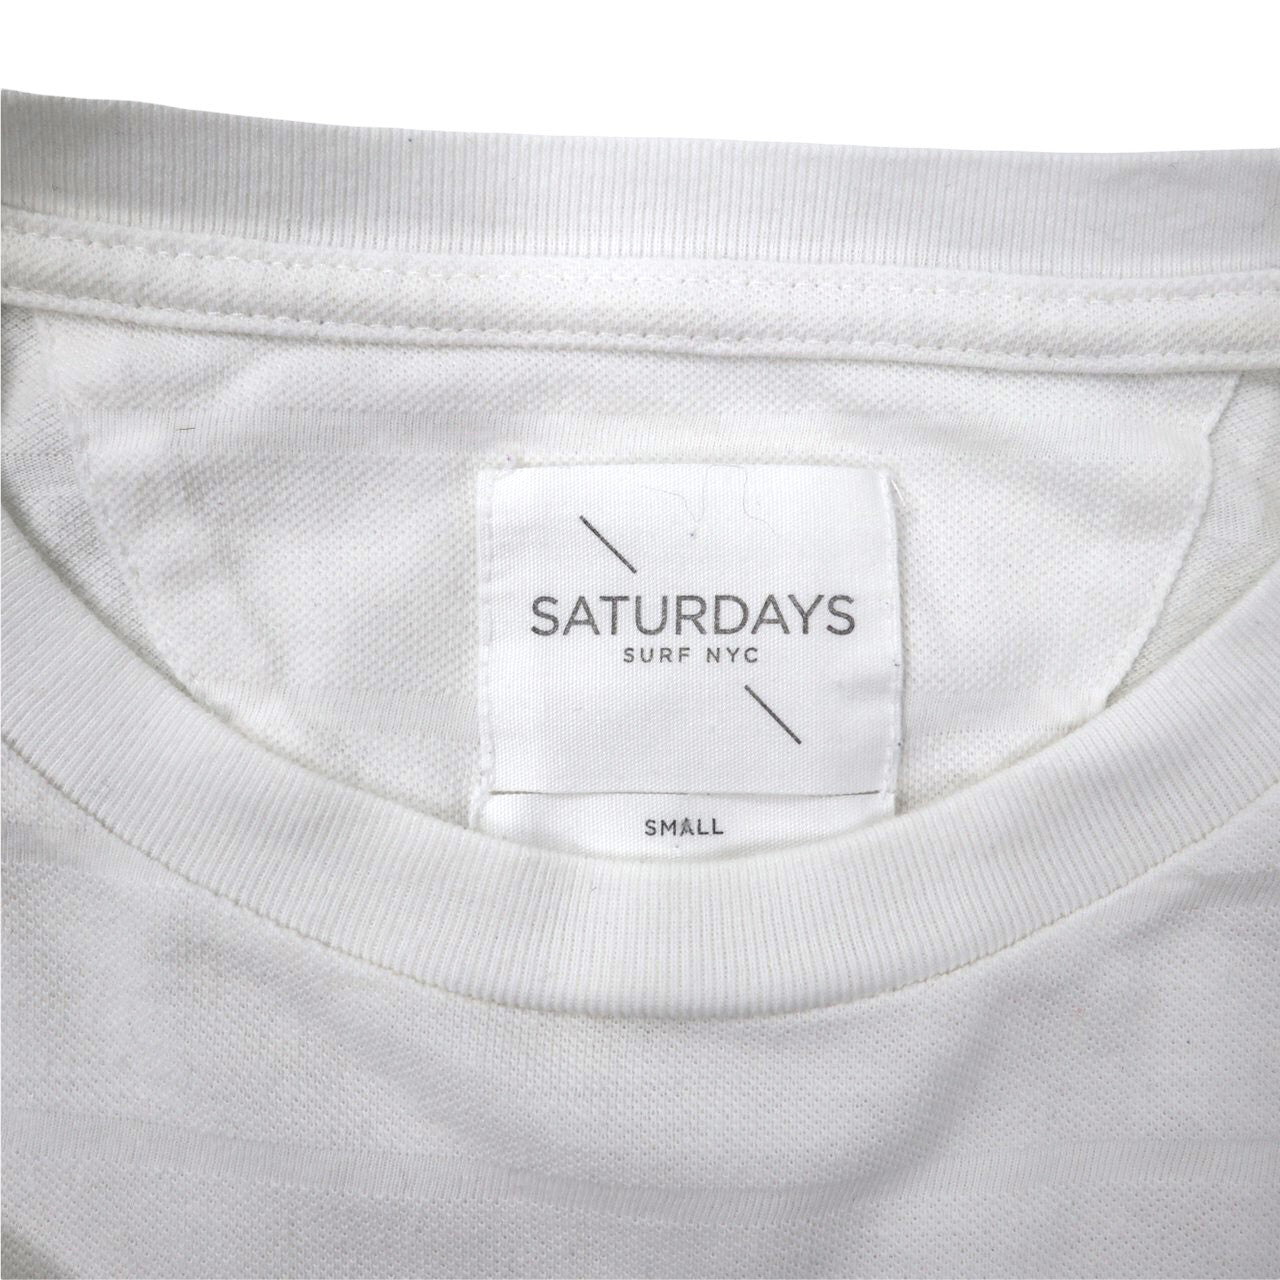 SATURDAYS SURF NYC ポケットTシャツ S ホワイト コットン